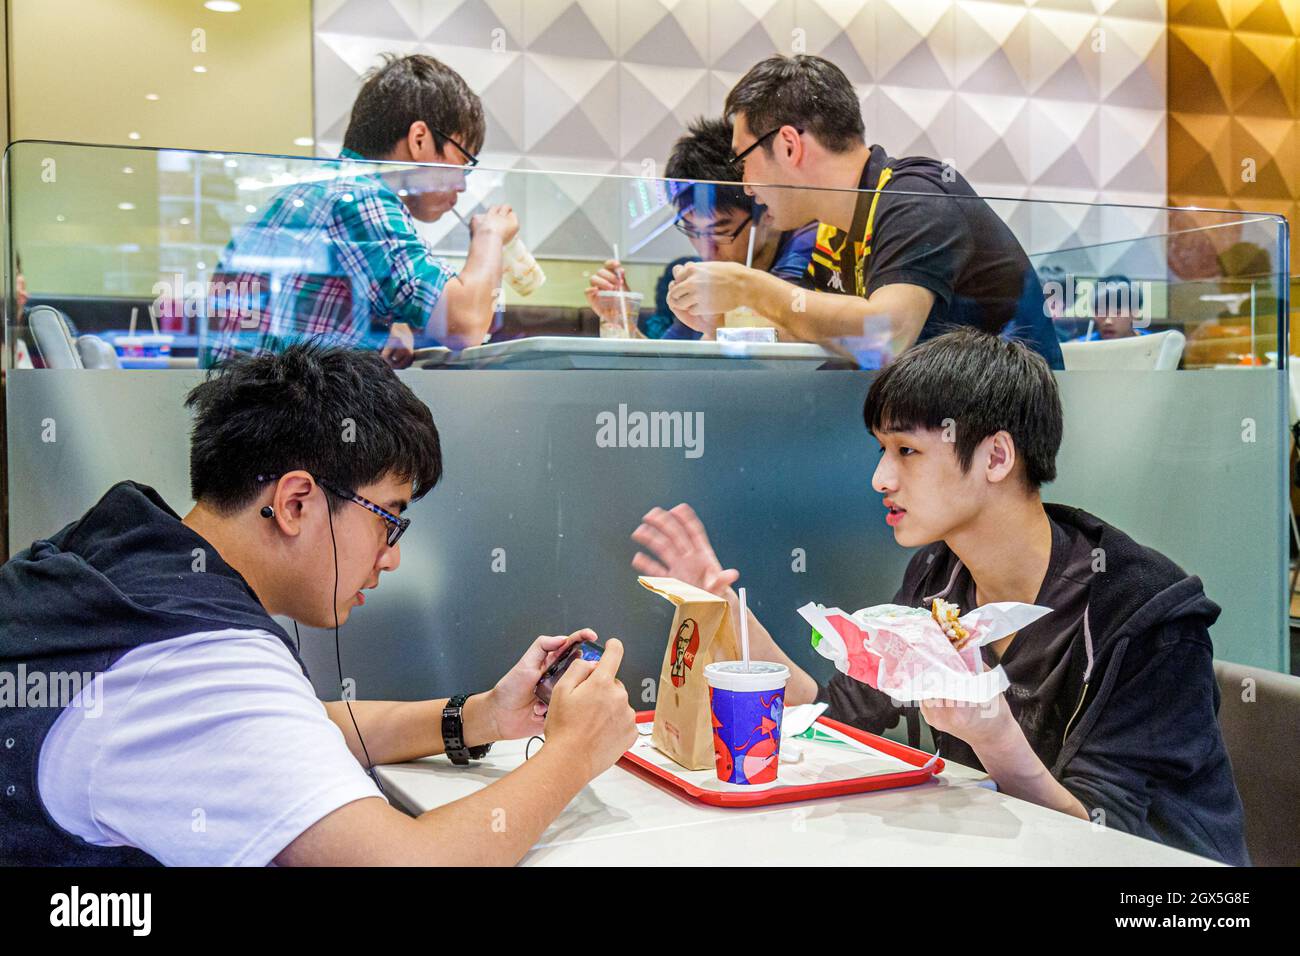 Shanghai Chine, Huangpu District, Xizang Road, People's Square Raffles City, asiatique adolescent adolescents adolescents adolescents garçons, KFC restaurant restauration rapide à l'intérieur Banque D'Images